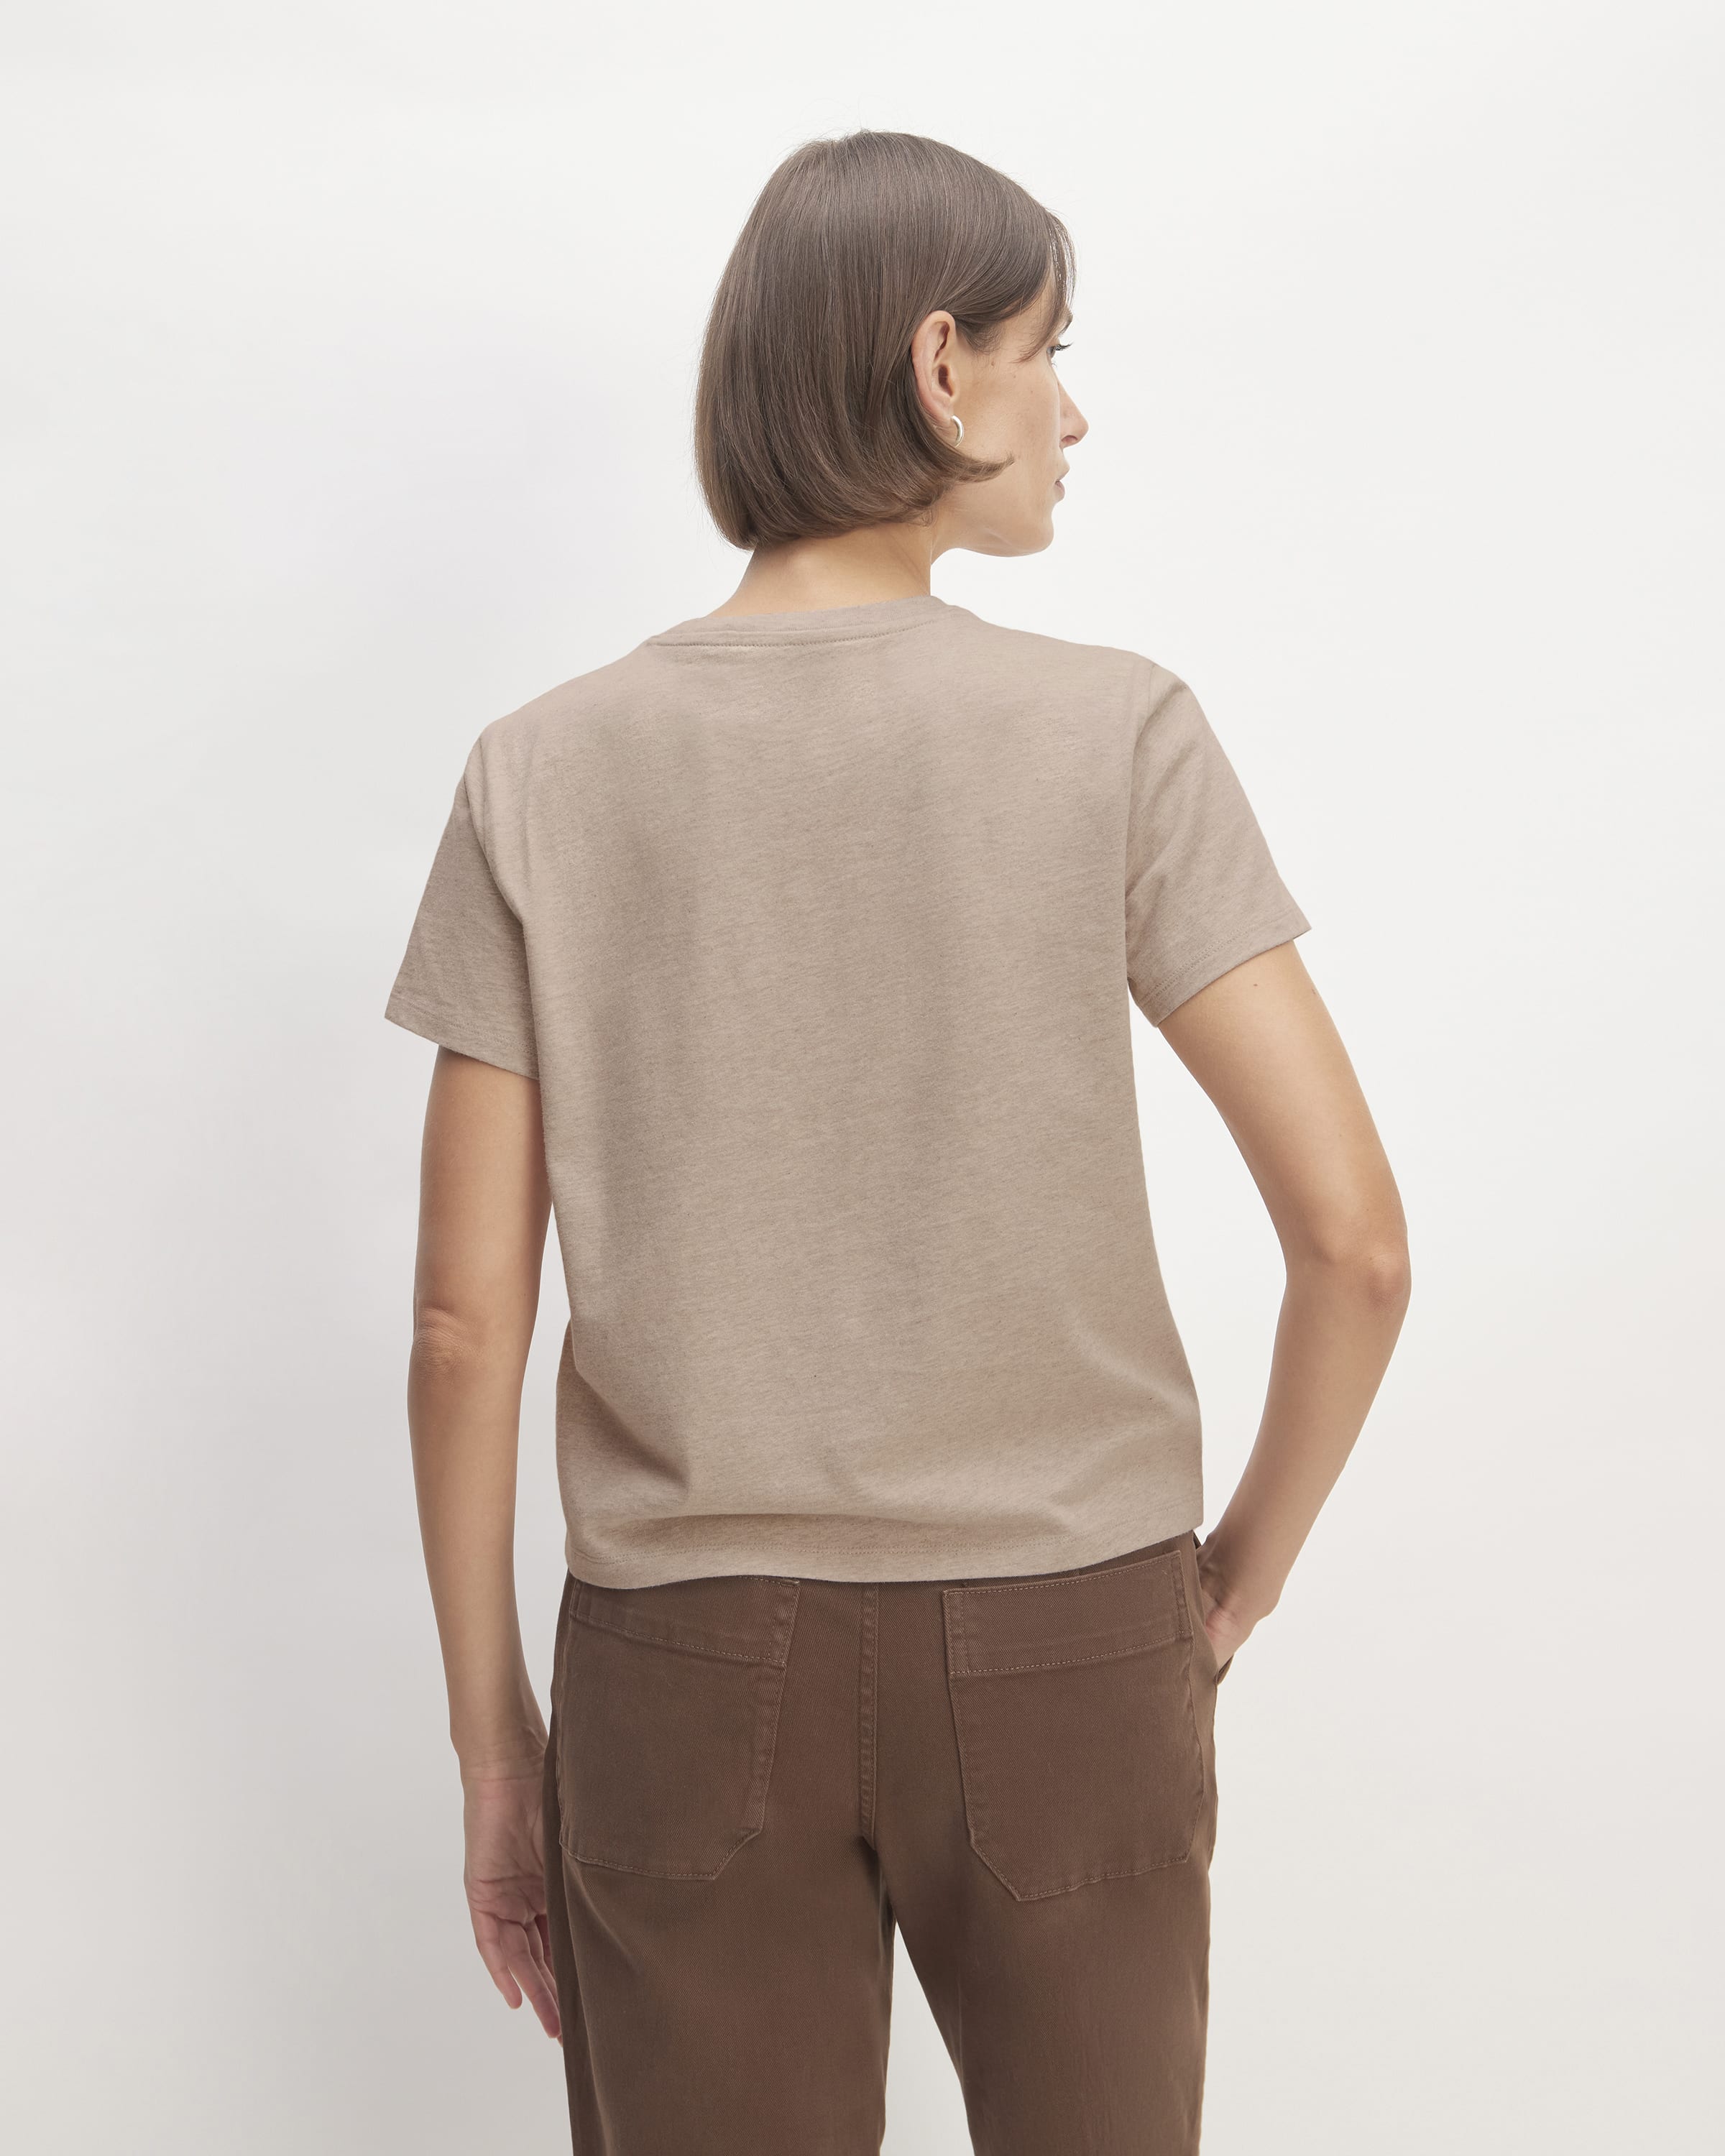 Jesse Brown Shapes - T-Shirt for Men